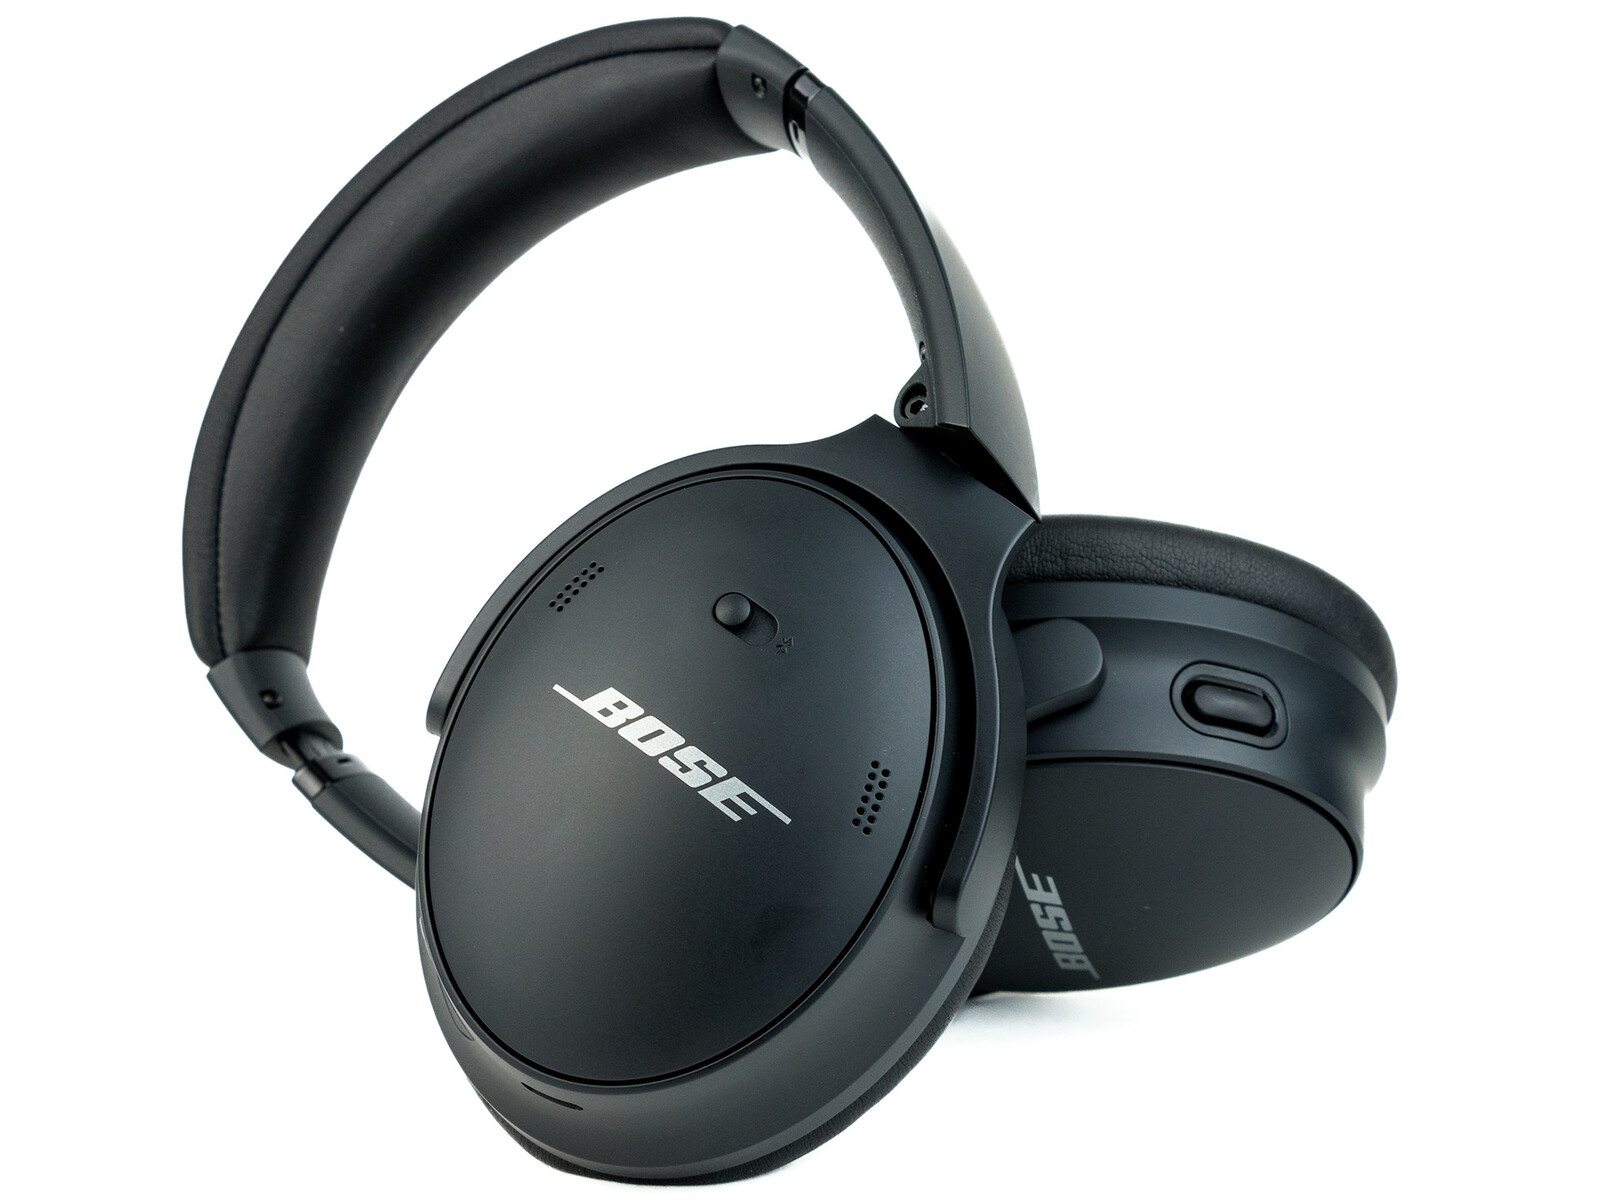 Bose QuietComfort 45 Review - Proven Headphones Now Even Better